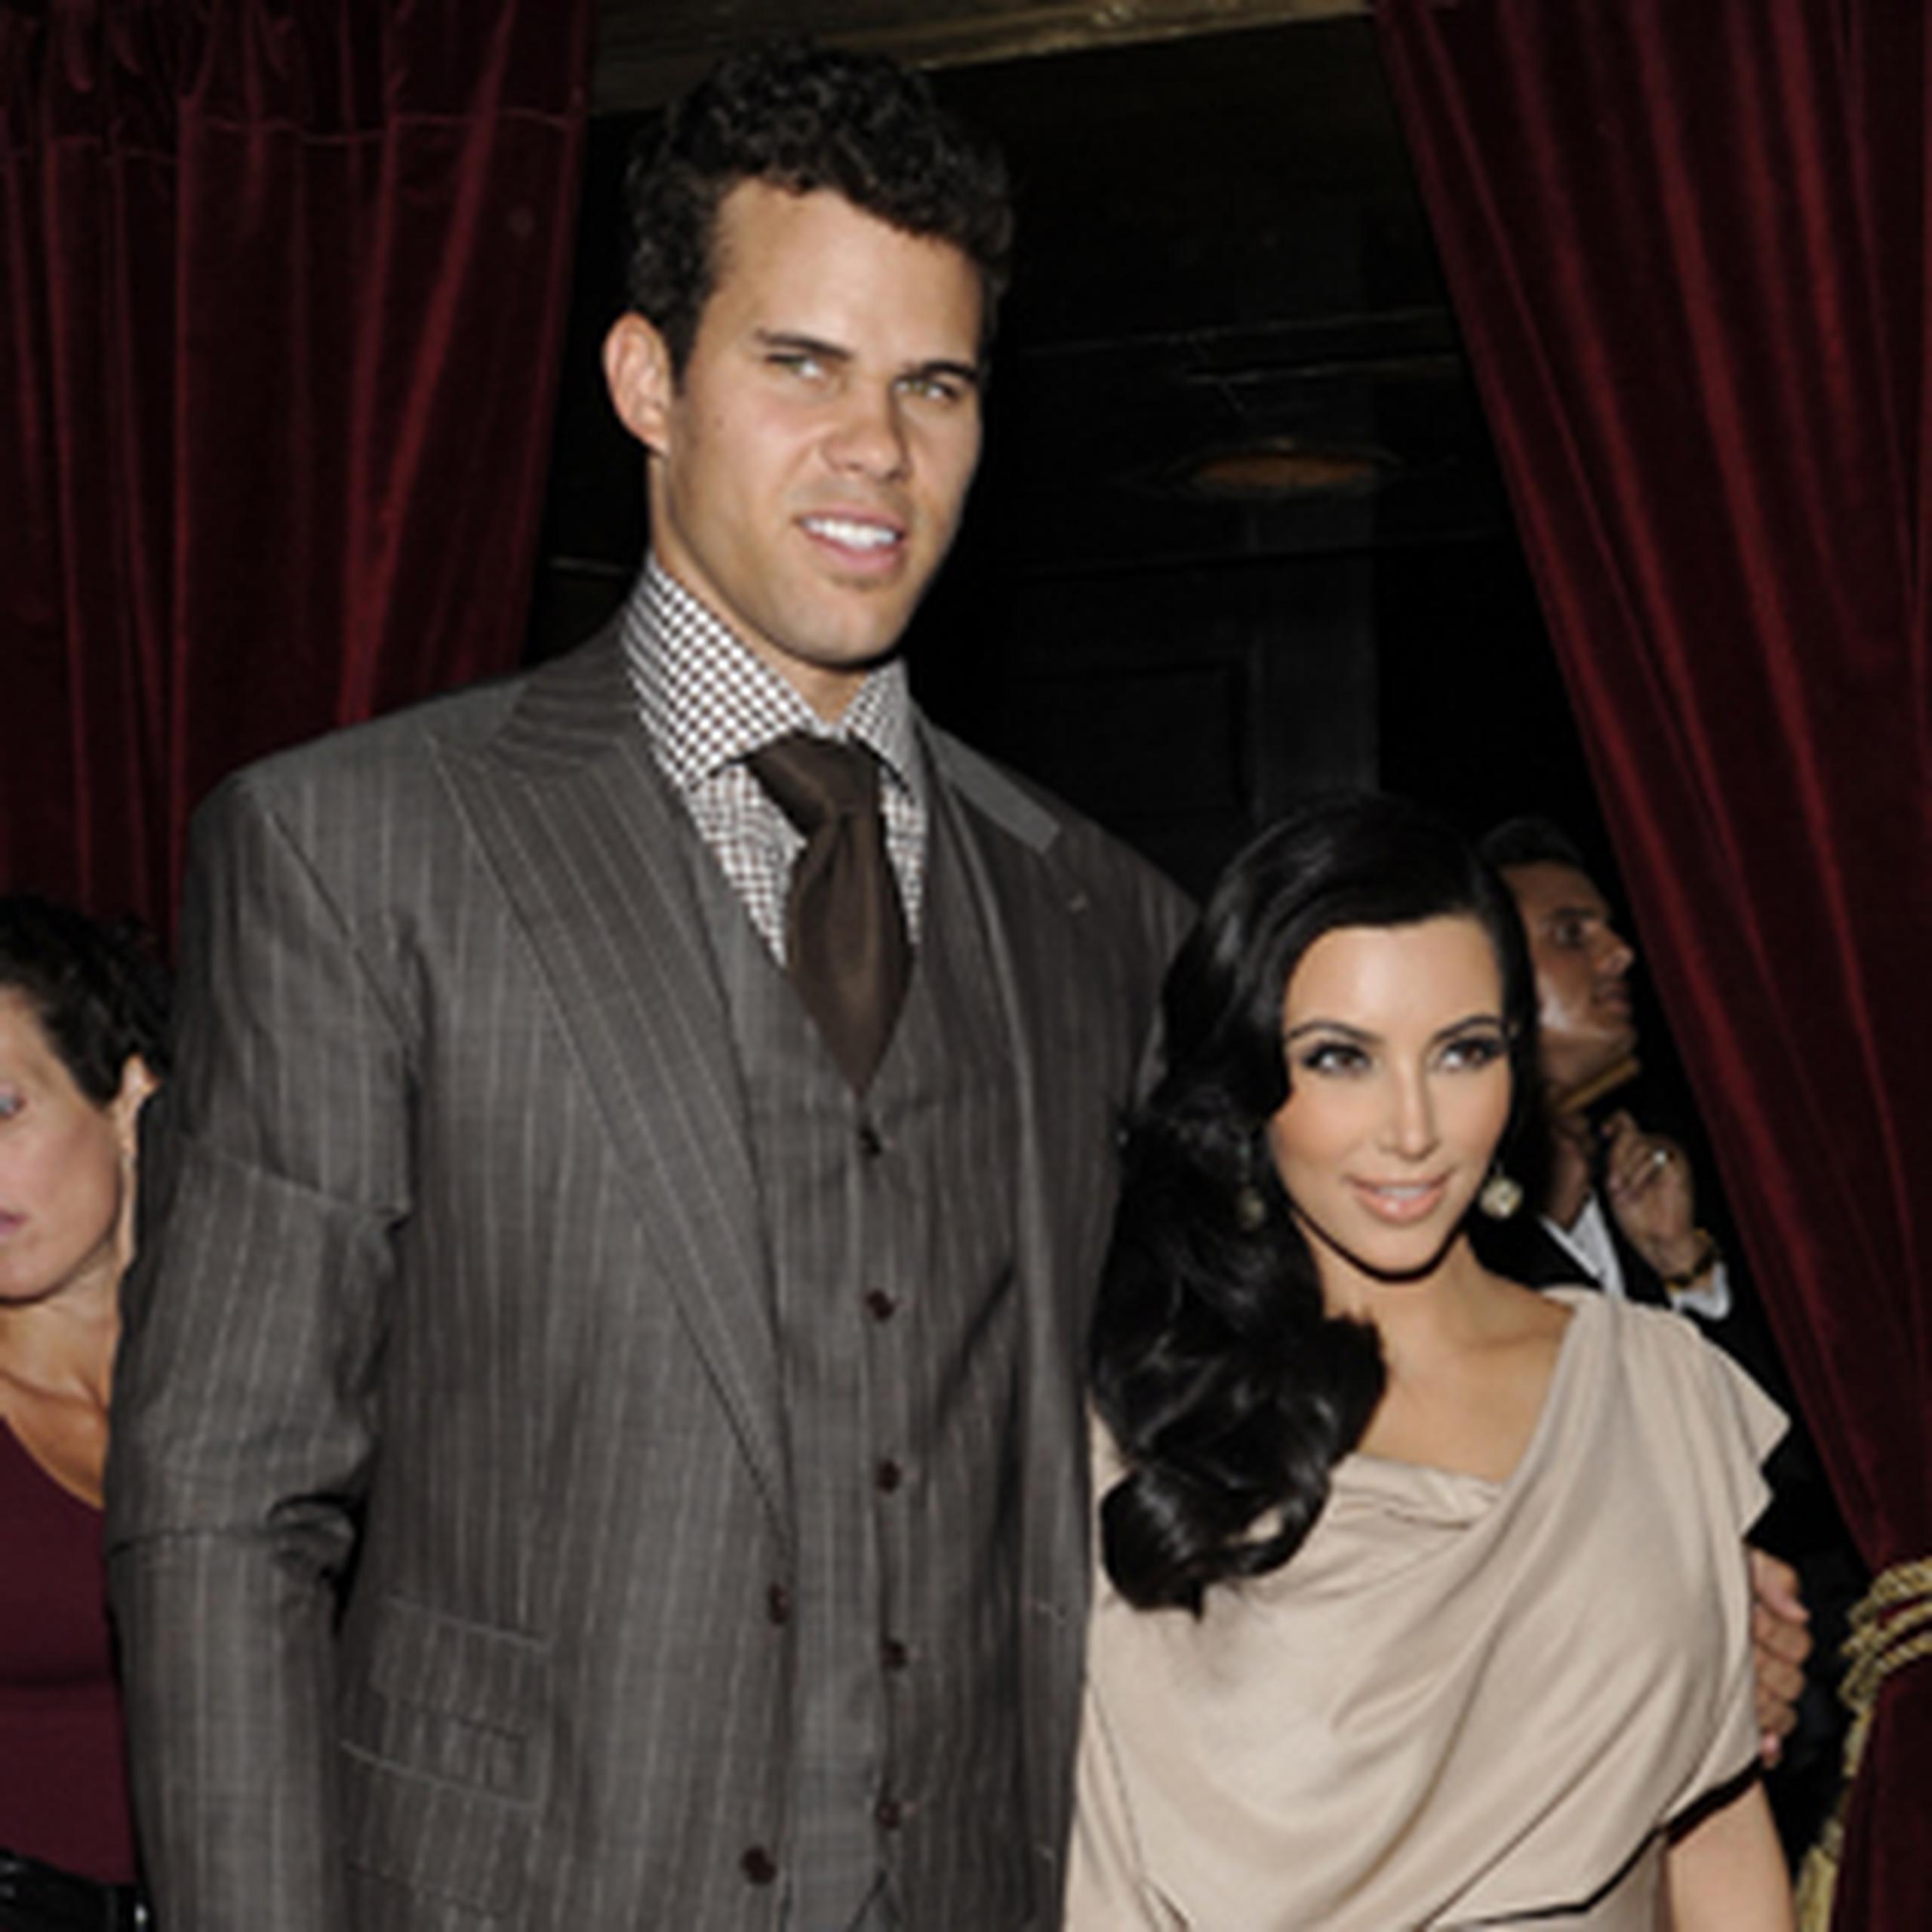 Kardashian presentó su solicitud de divorcio el 21 de octubre del 2011, luego de 72 días de casada con Humphries. (Archivo)